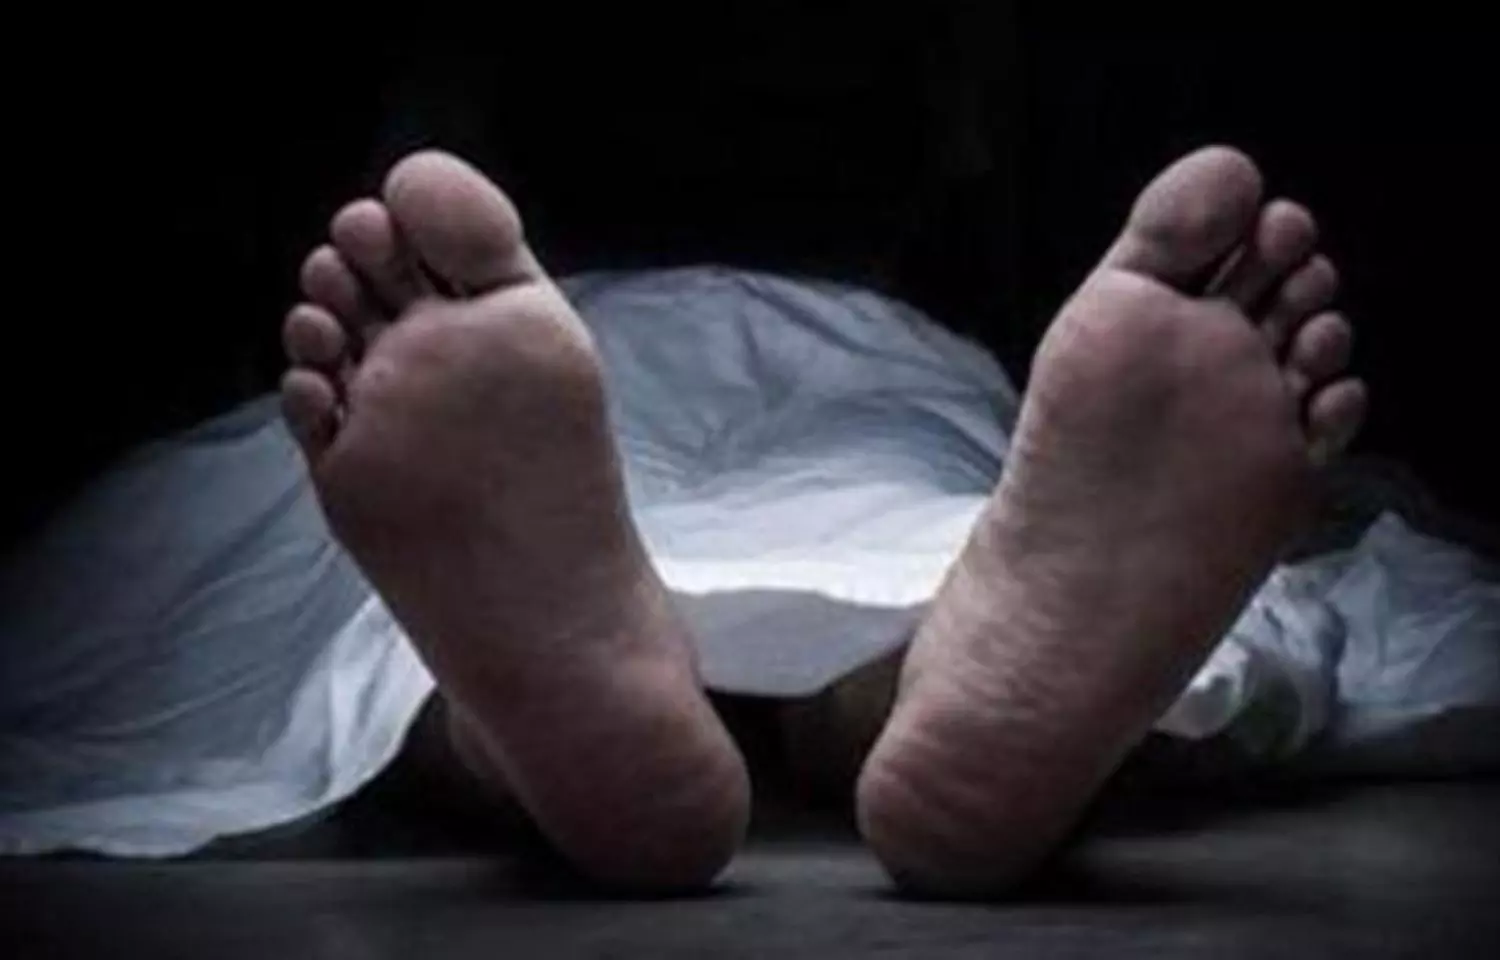 Anakapalli private doctor found dead, cops suspect suicide